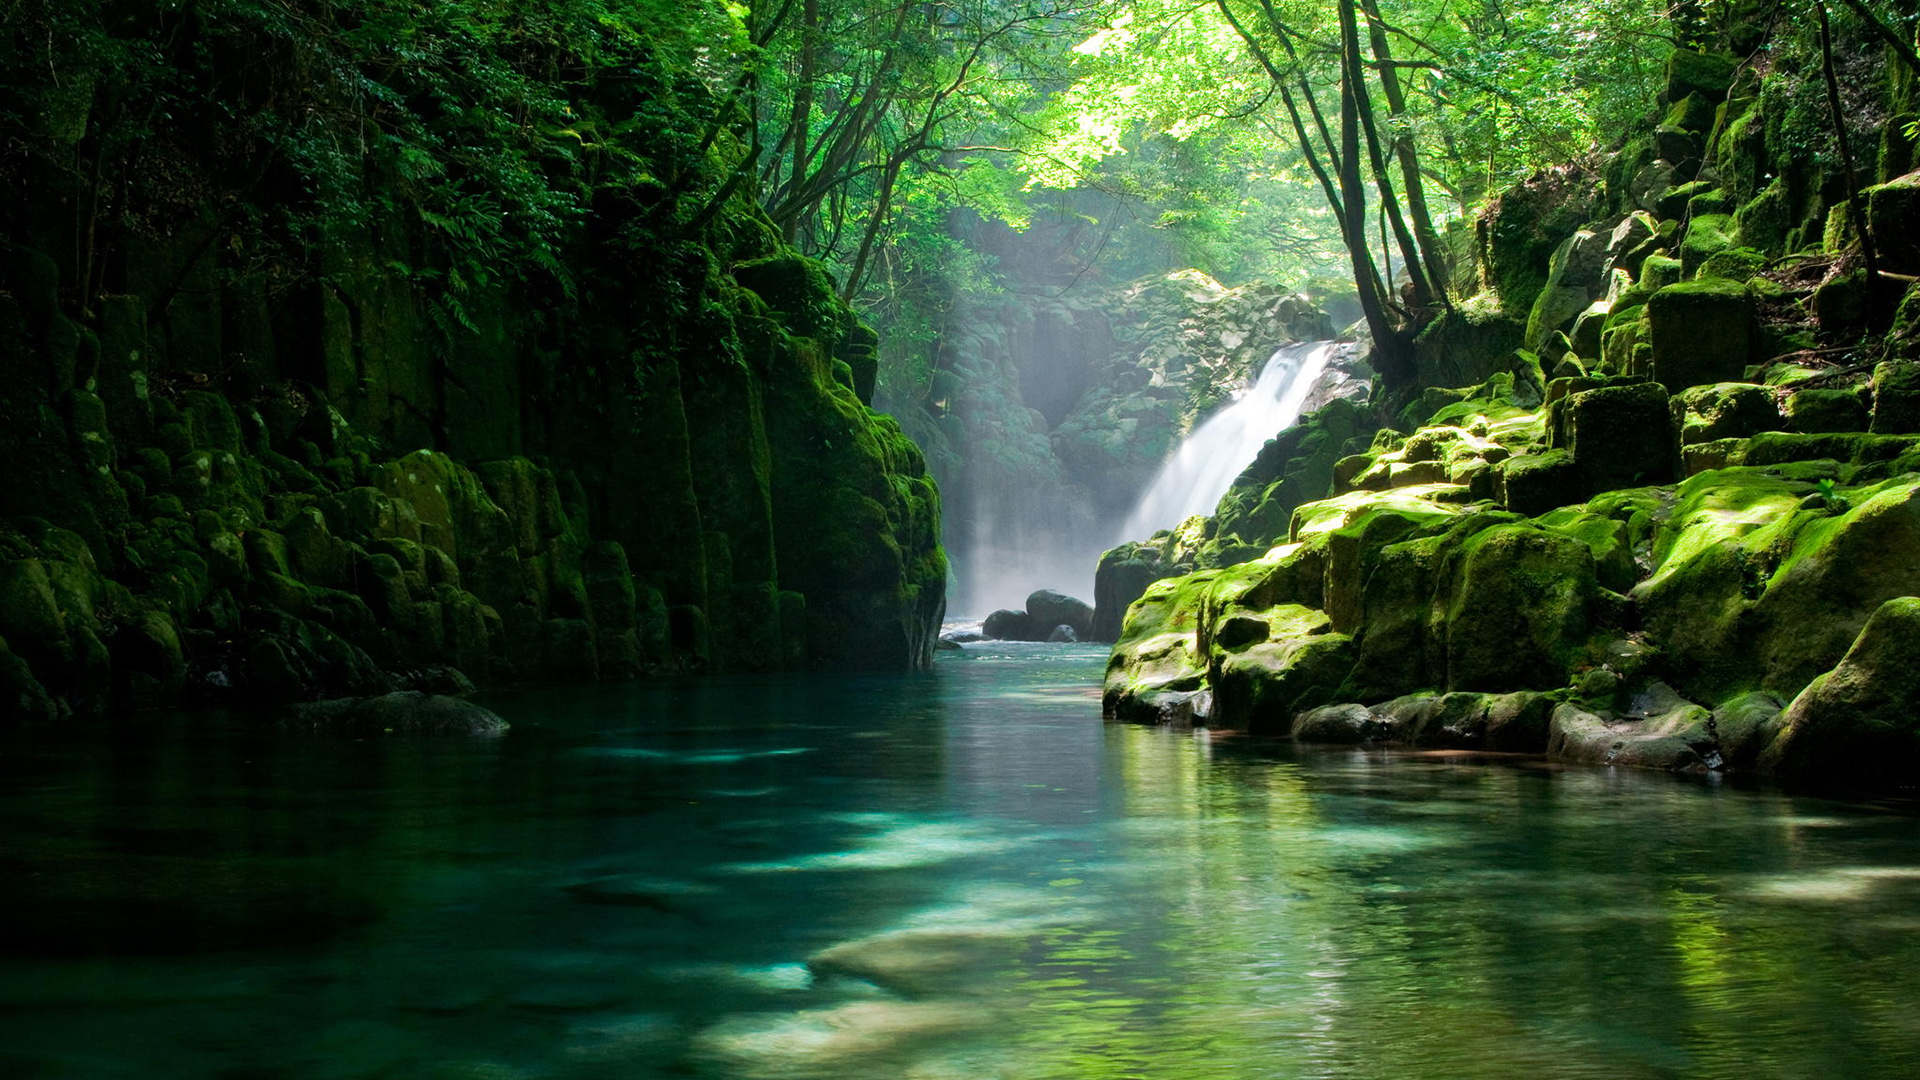 一池绿水 绿色护眼 清新 山涧密林 树木 小溪 自然风景壁纸